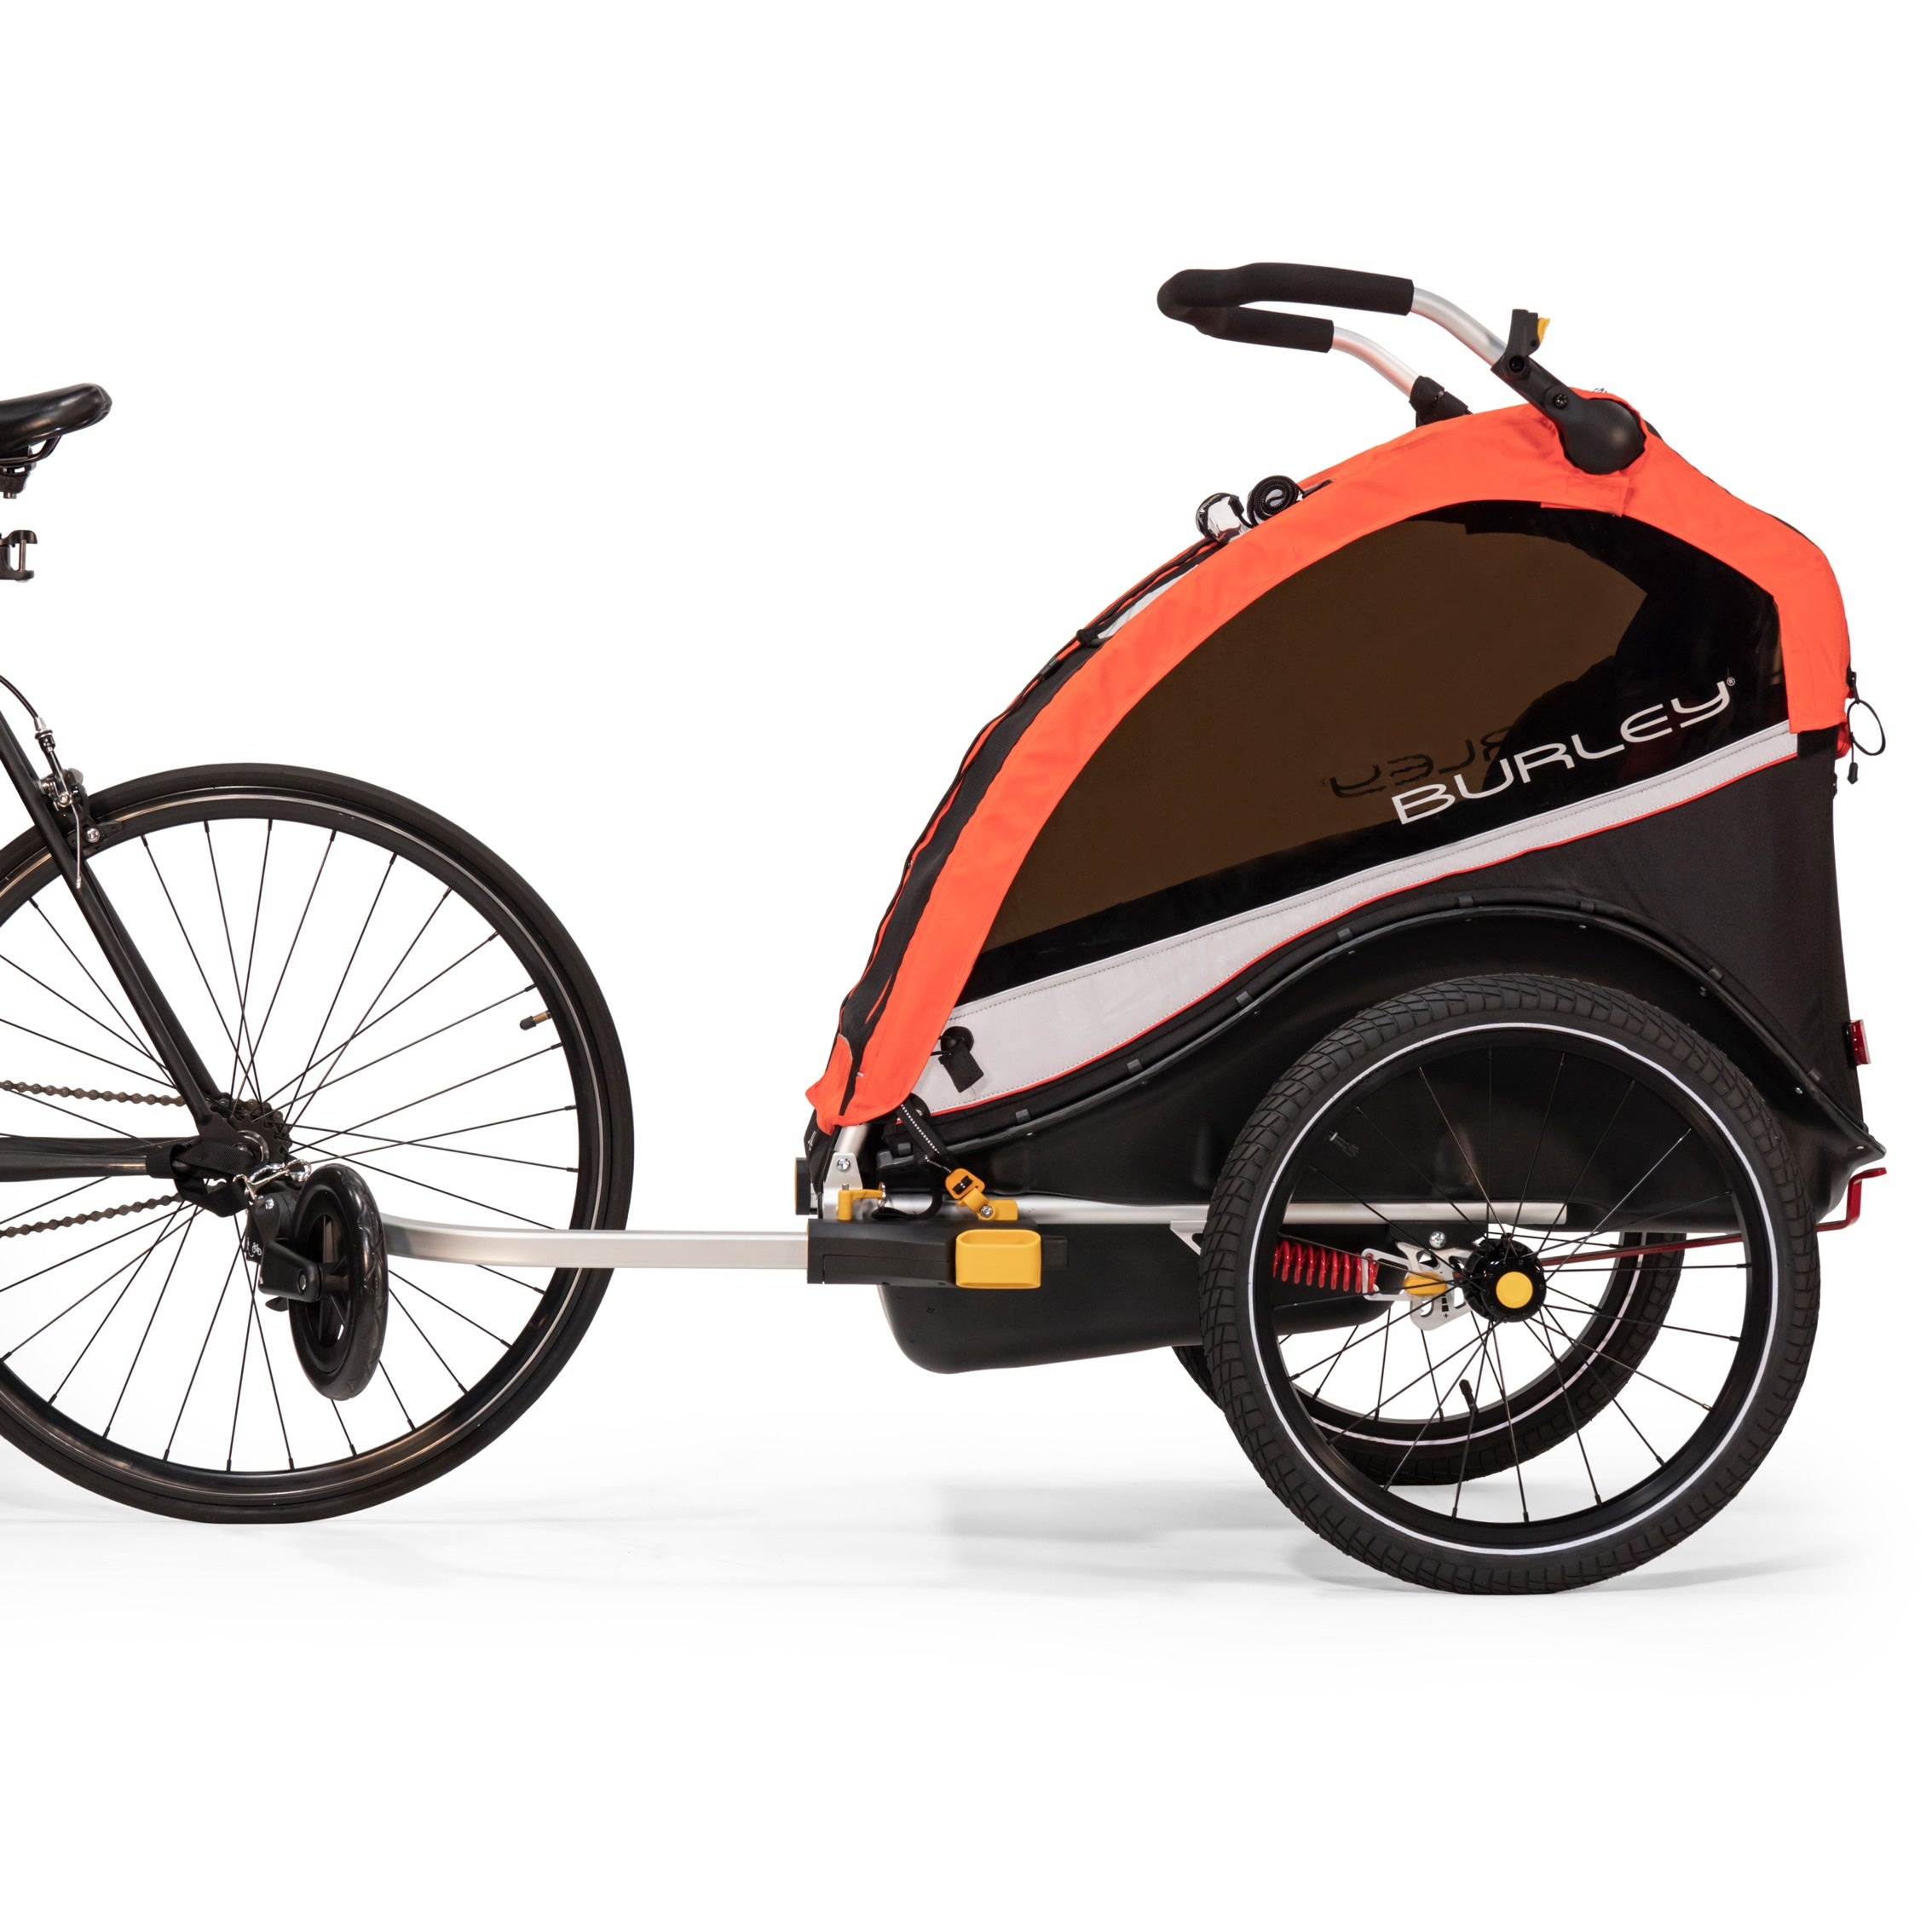 Tilbehør - Cykeltrailere - Burley Cub X Cykelanhænger til 2 børn - terrængående